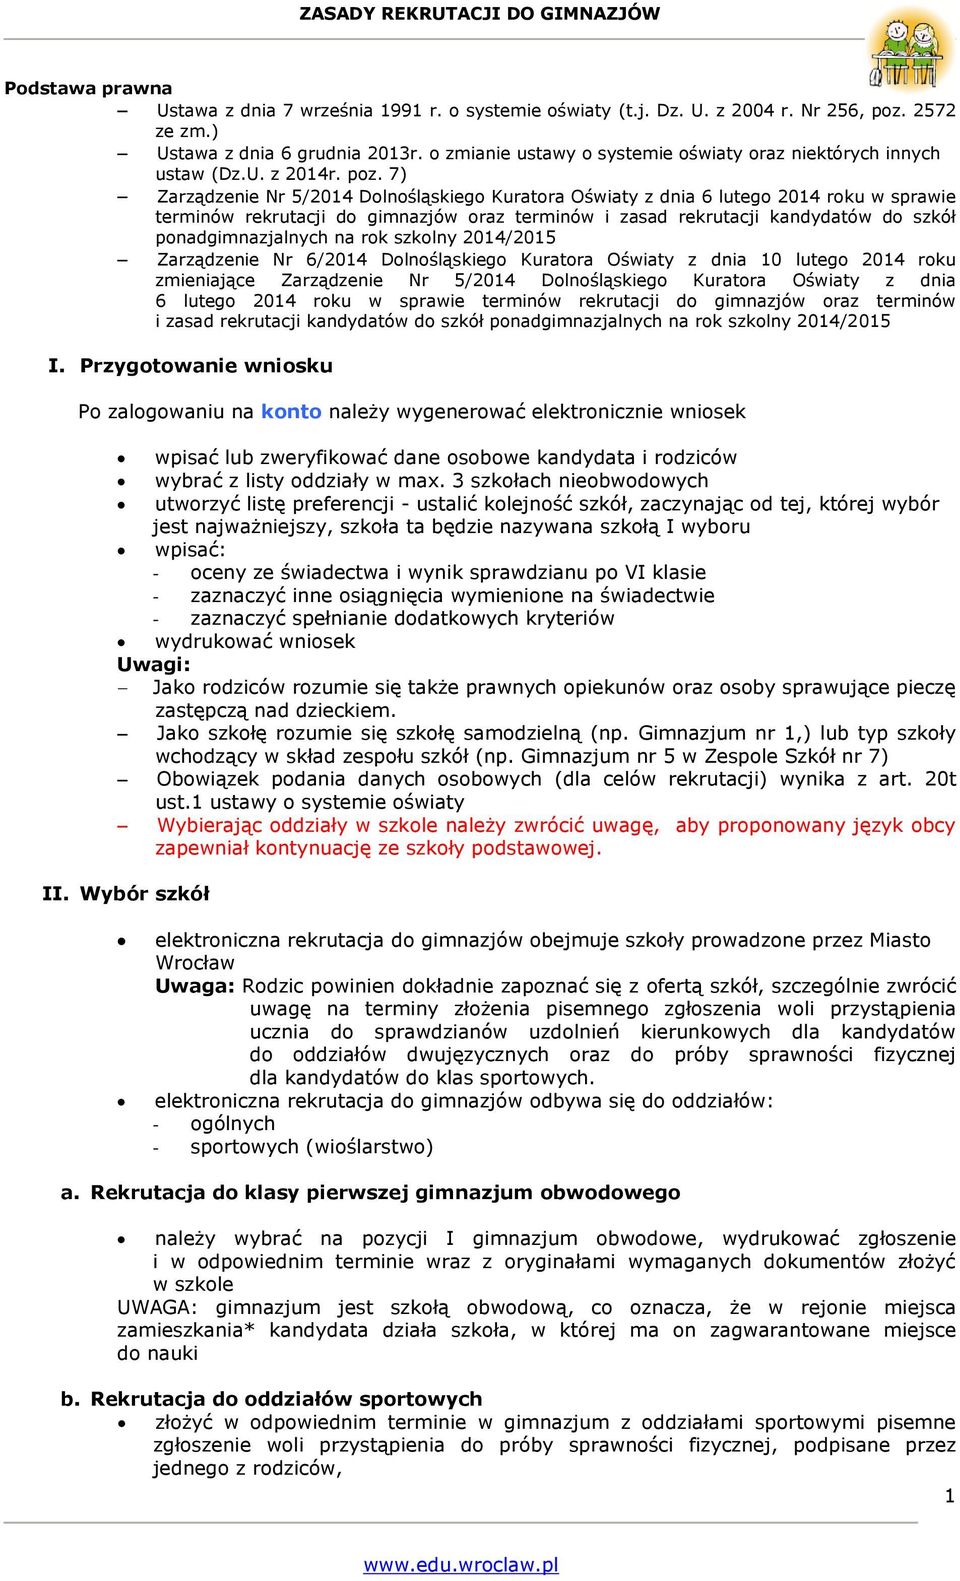 7) Zarządzenie Nr 5/014 Dolnośląskiego Kuratora Oświaty z dnia 6 lutego 014 roku w sprawie terminów rekrutacji do gimnazjów oraz terminów i zasad rekrutacji kandydatów do szkół ponadgimnazjalnych na